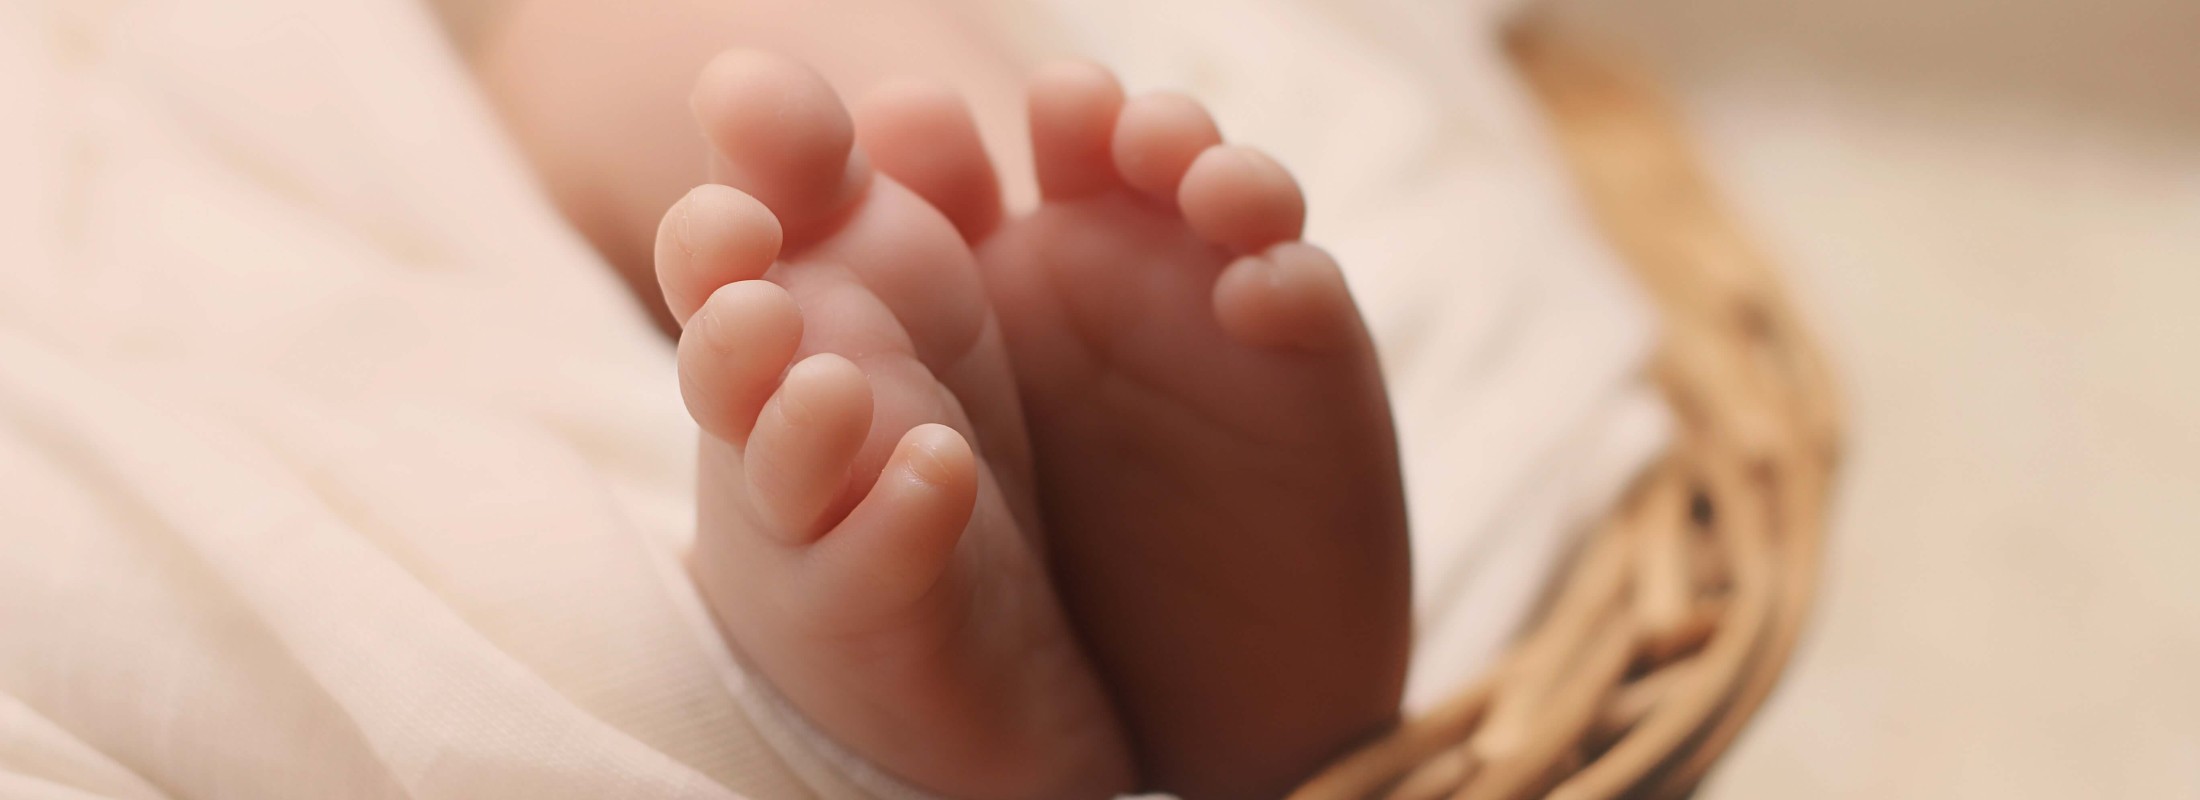 voeten baby